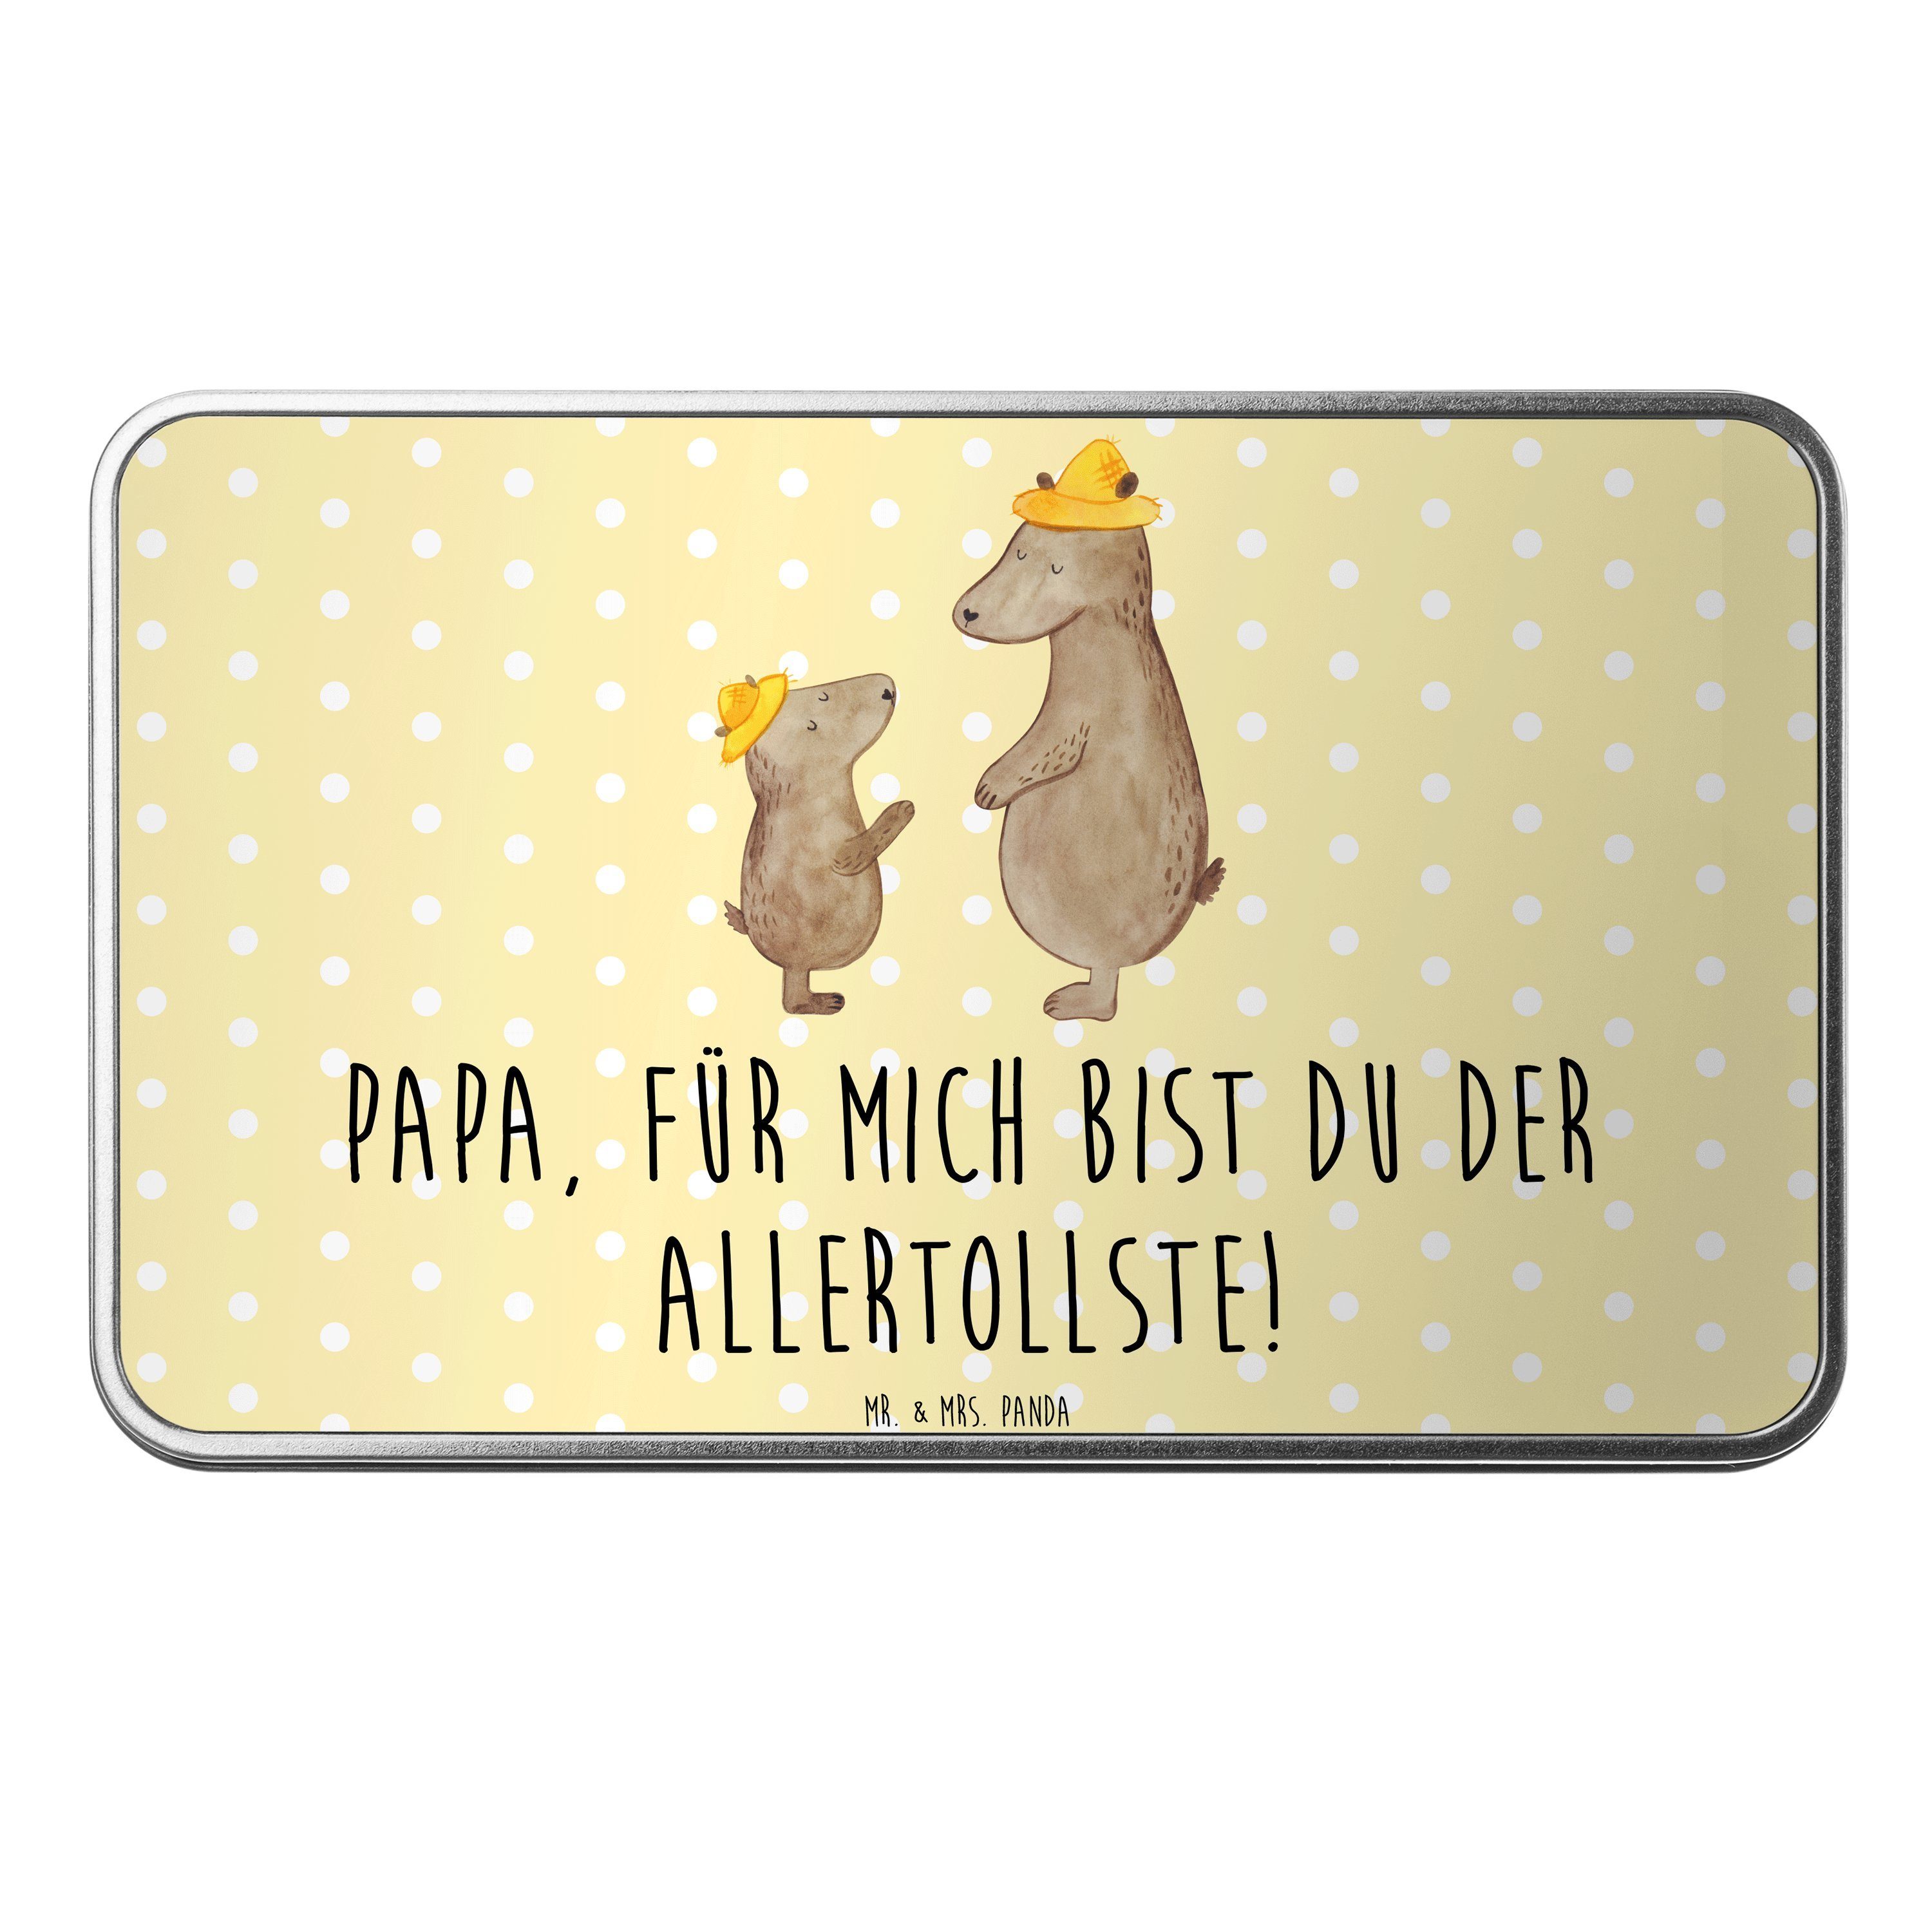 Mr. & Mrs. Panda Dose Bären mit Hut - Gelb Pastell - Geschenk, Metalldose, Familie, Kind, B (1 St)